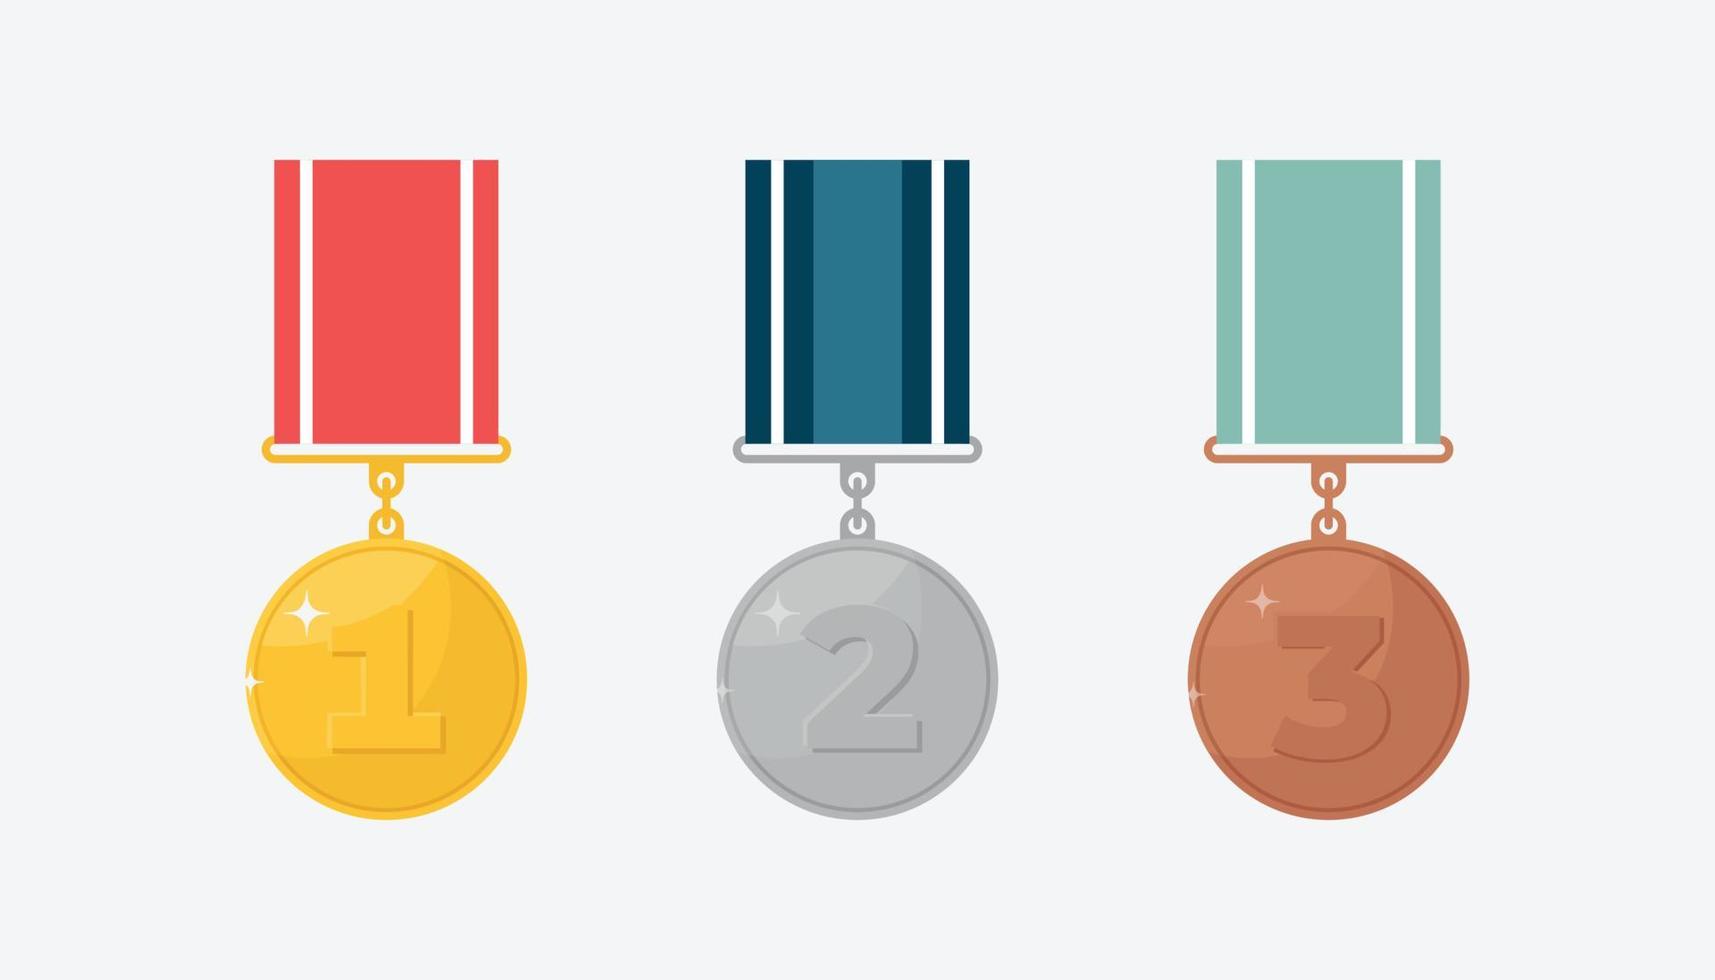 satz aus gold-, silber- und bronzemetallmedaillen für den ersten, zweiten und dritten platz. Champion-Award-Symbole, isoliert auf weißem Hintergrund. flache vektorillustration vektor